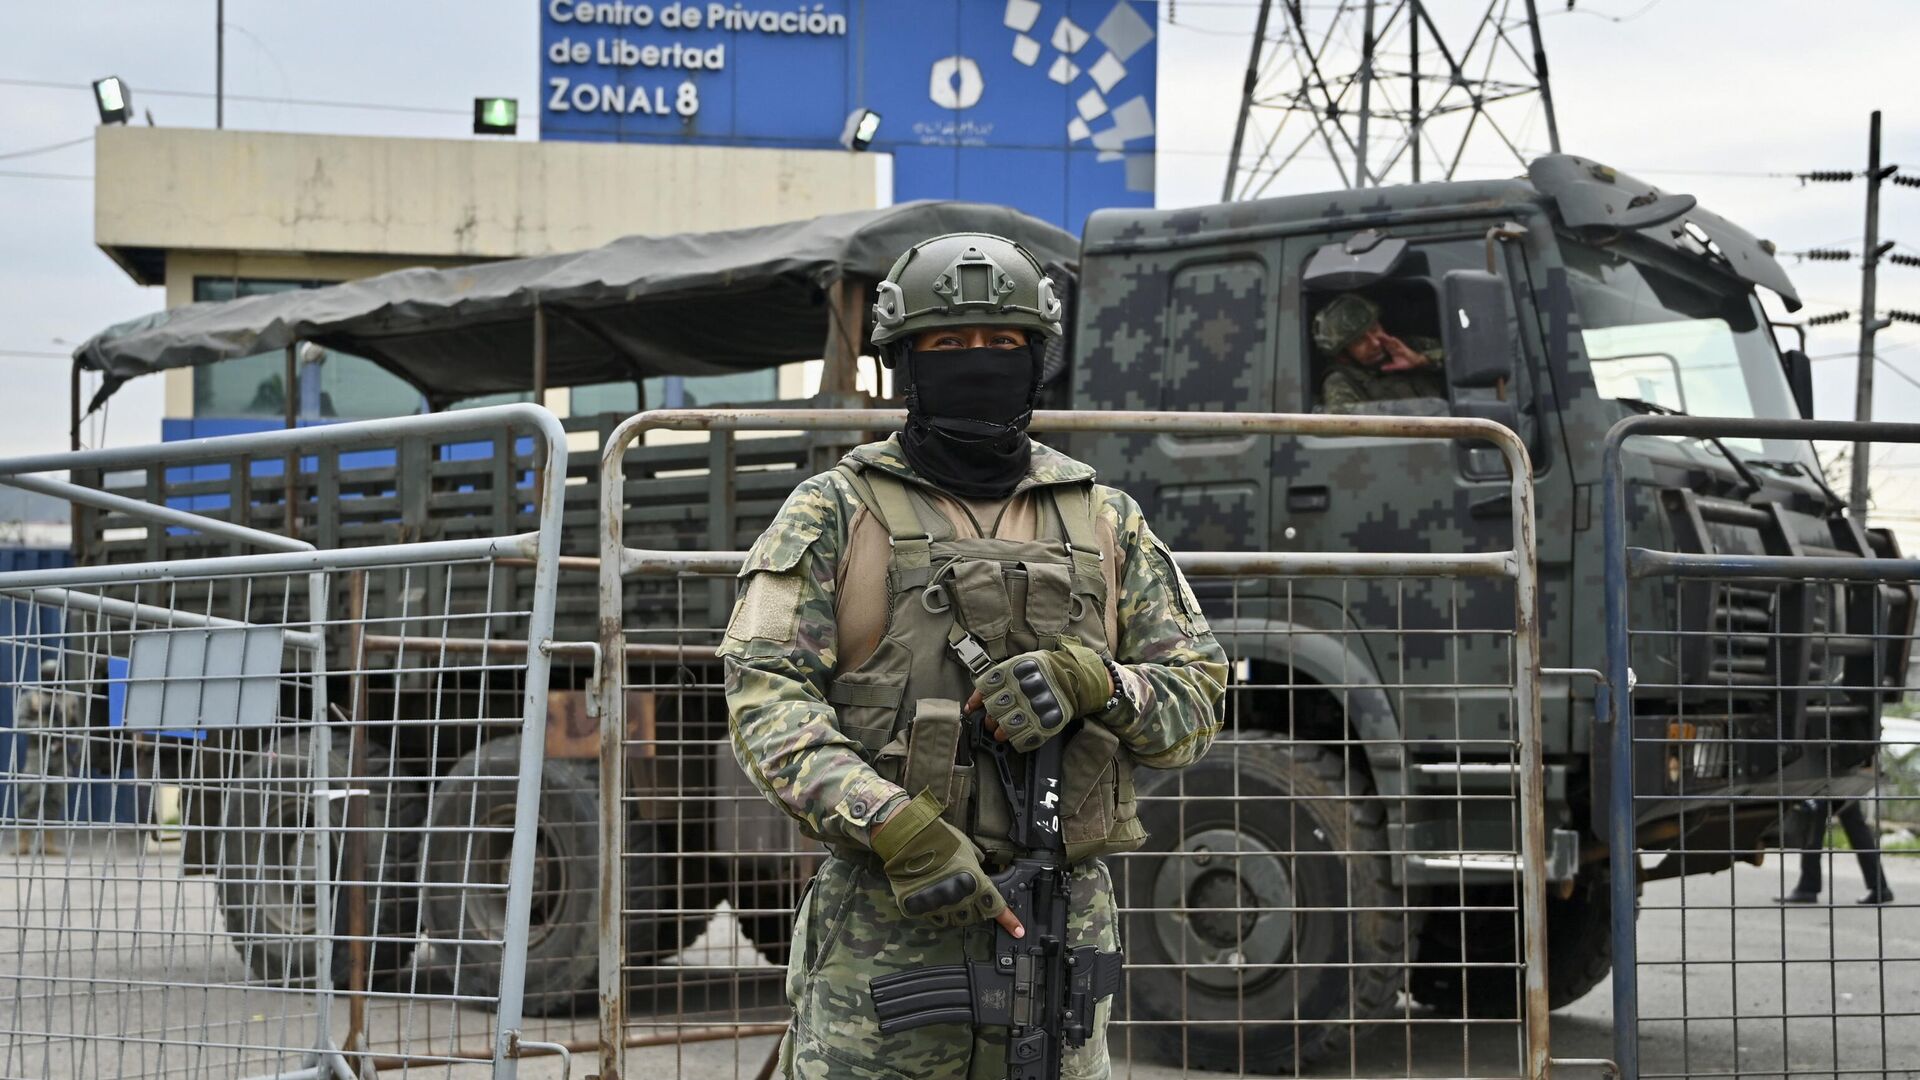 Un soldado monta guardia frente al complejo penitenciario Regional 8 durante una operación en Guayaquil, Ecuador, en enero de 2024 - Sputnik Mundo, 1920, 10.02.2024